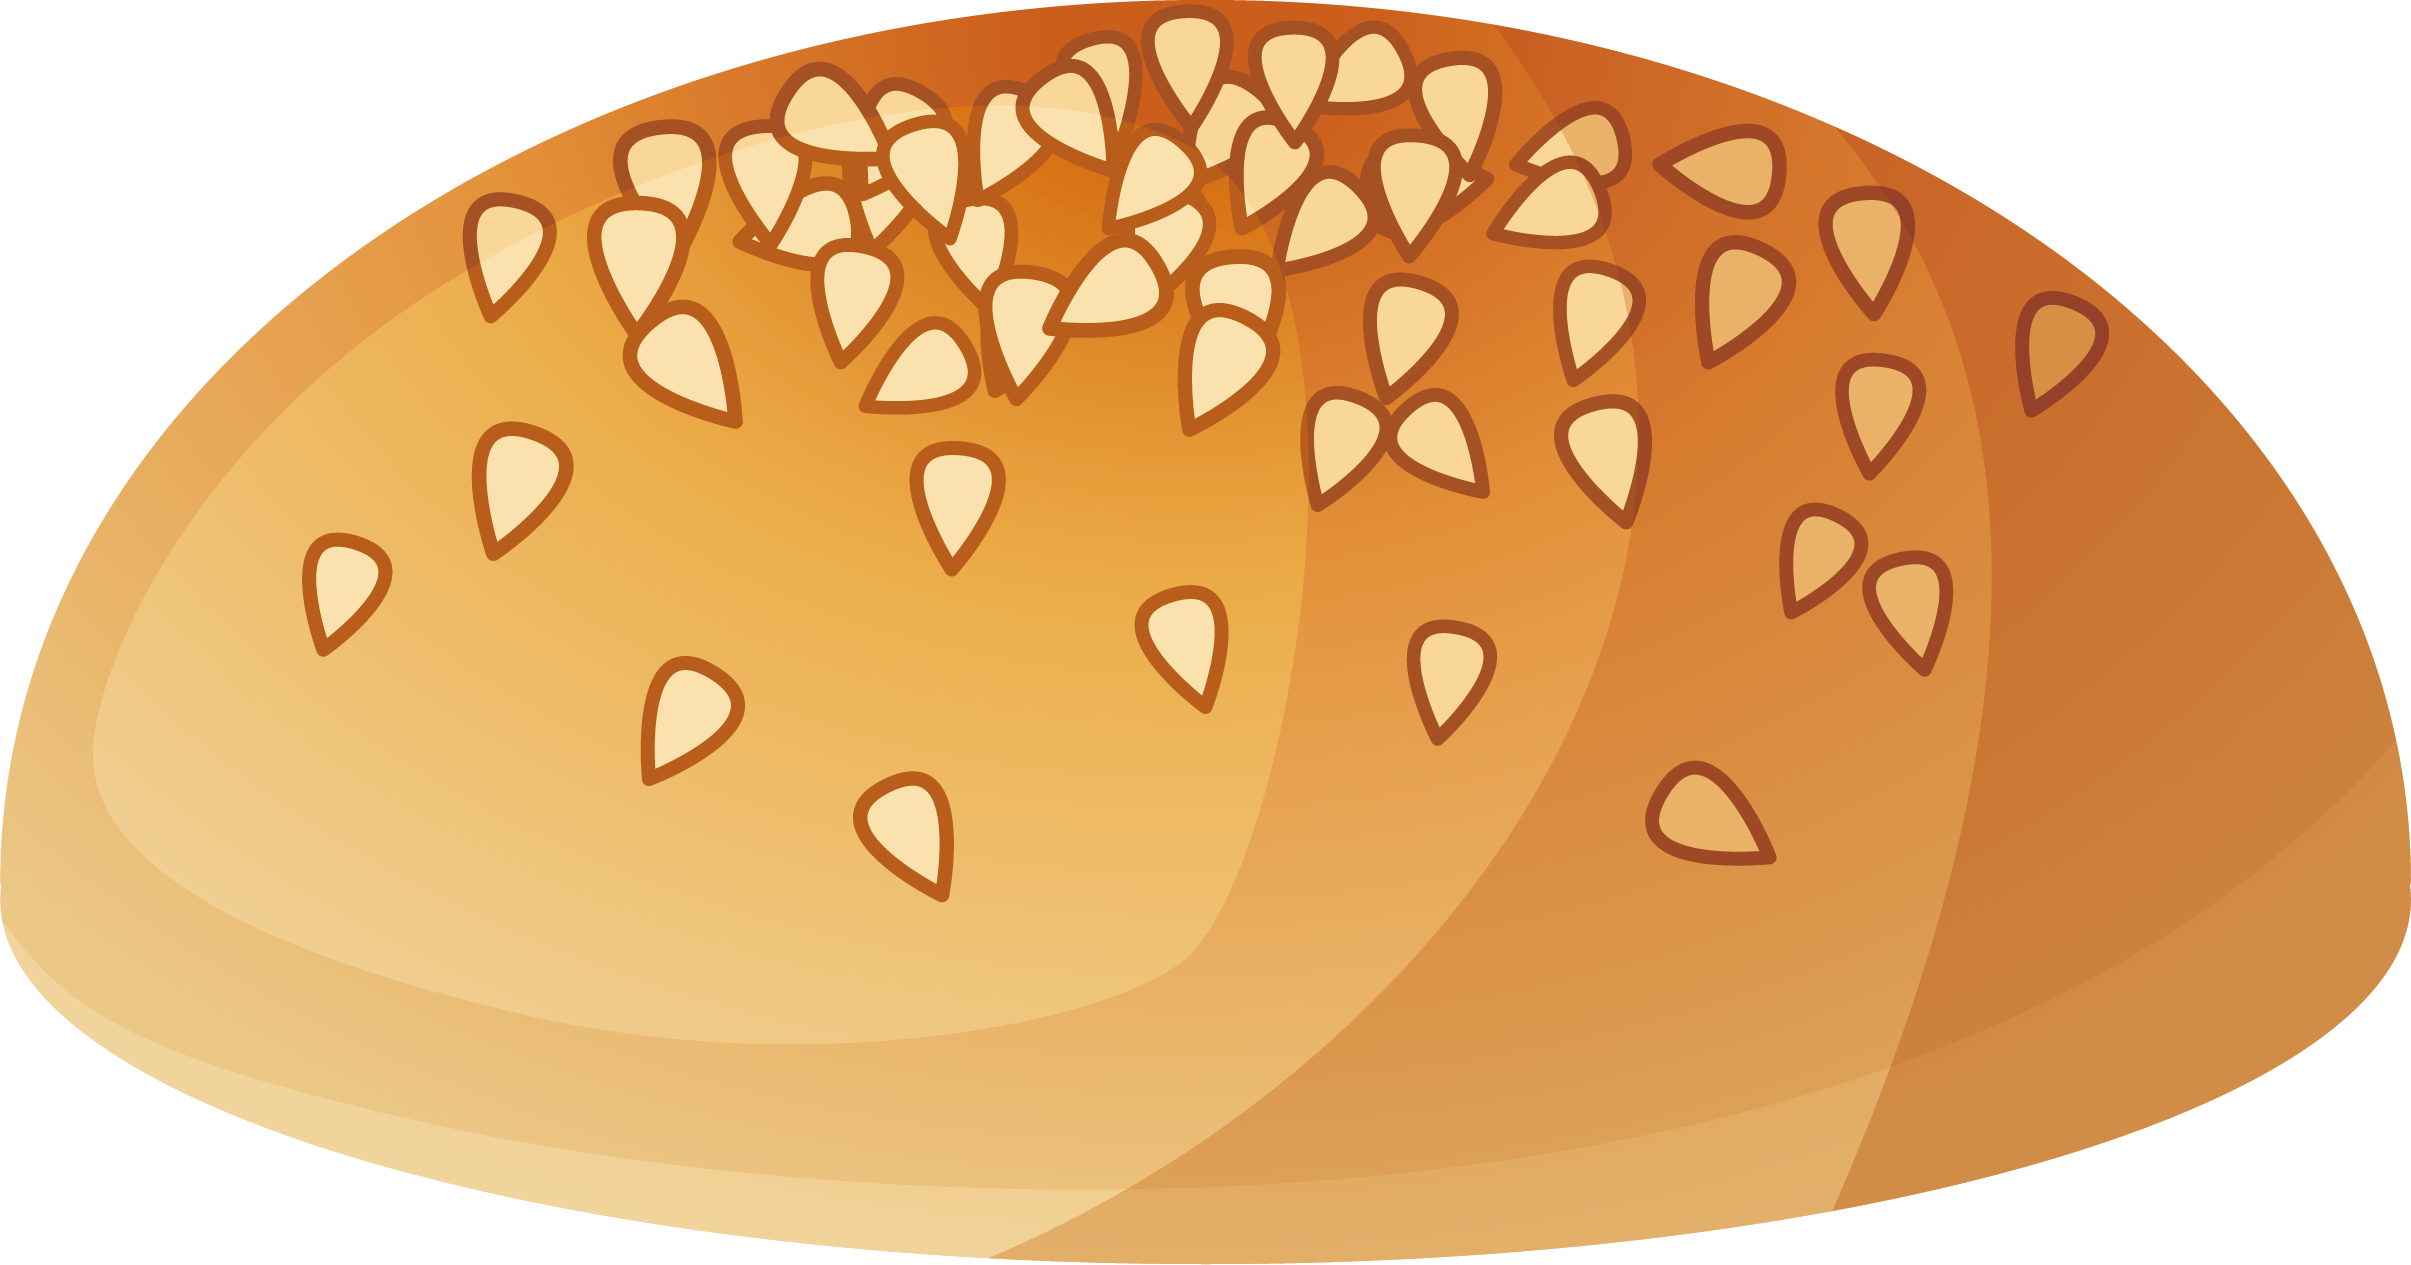 Wheat Bread Euclidean Vector - Wheat (2411x1265)